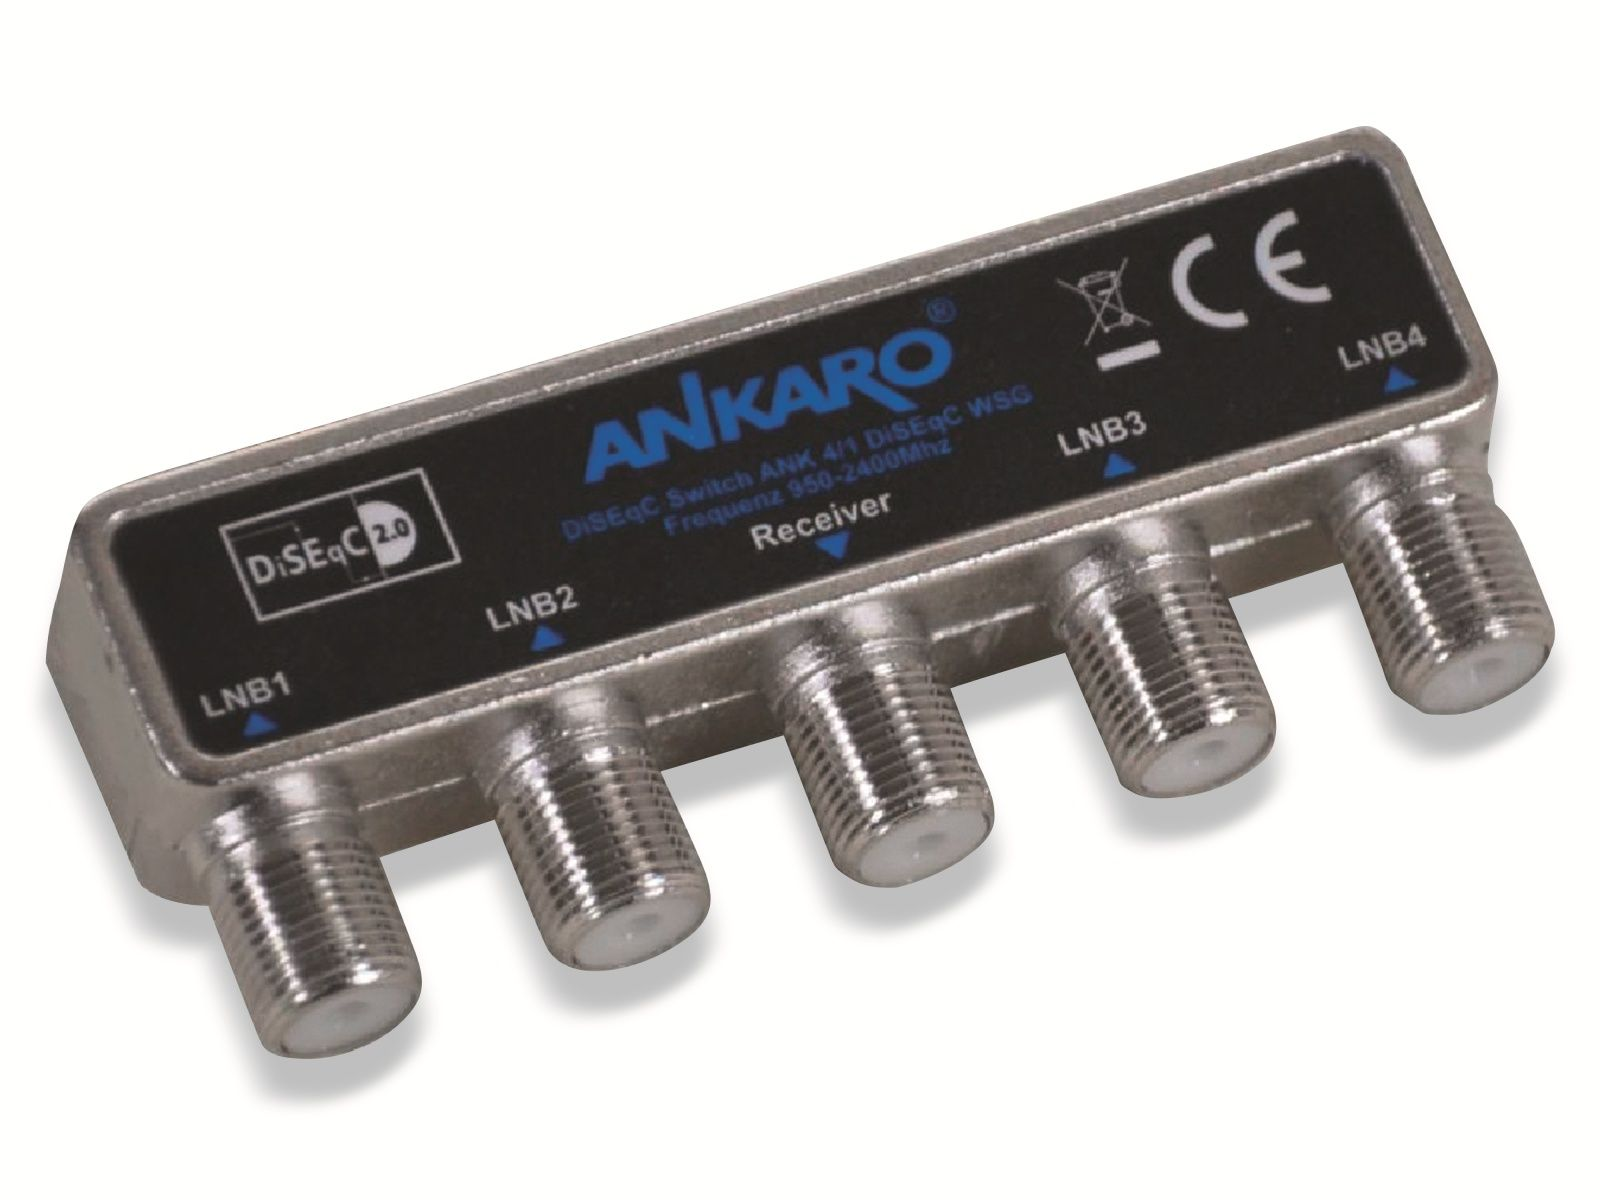 ANKARO ANK 4/1 Mastmontage WSG DiSEqC Schalter 2.0 4 für Ausgang, mit LNCs,1 für SAT-Multischalter Wetterschutzgehäuse